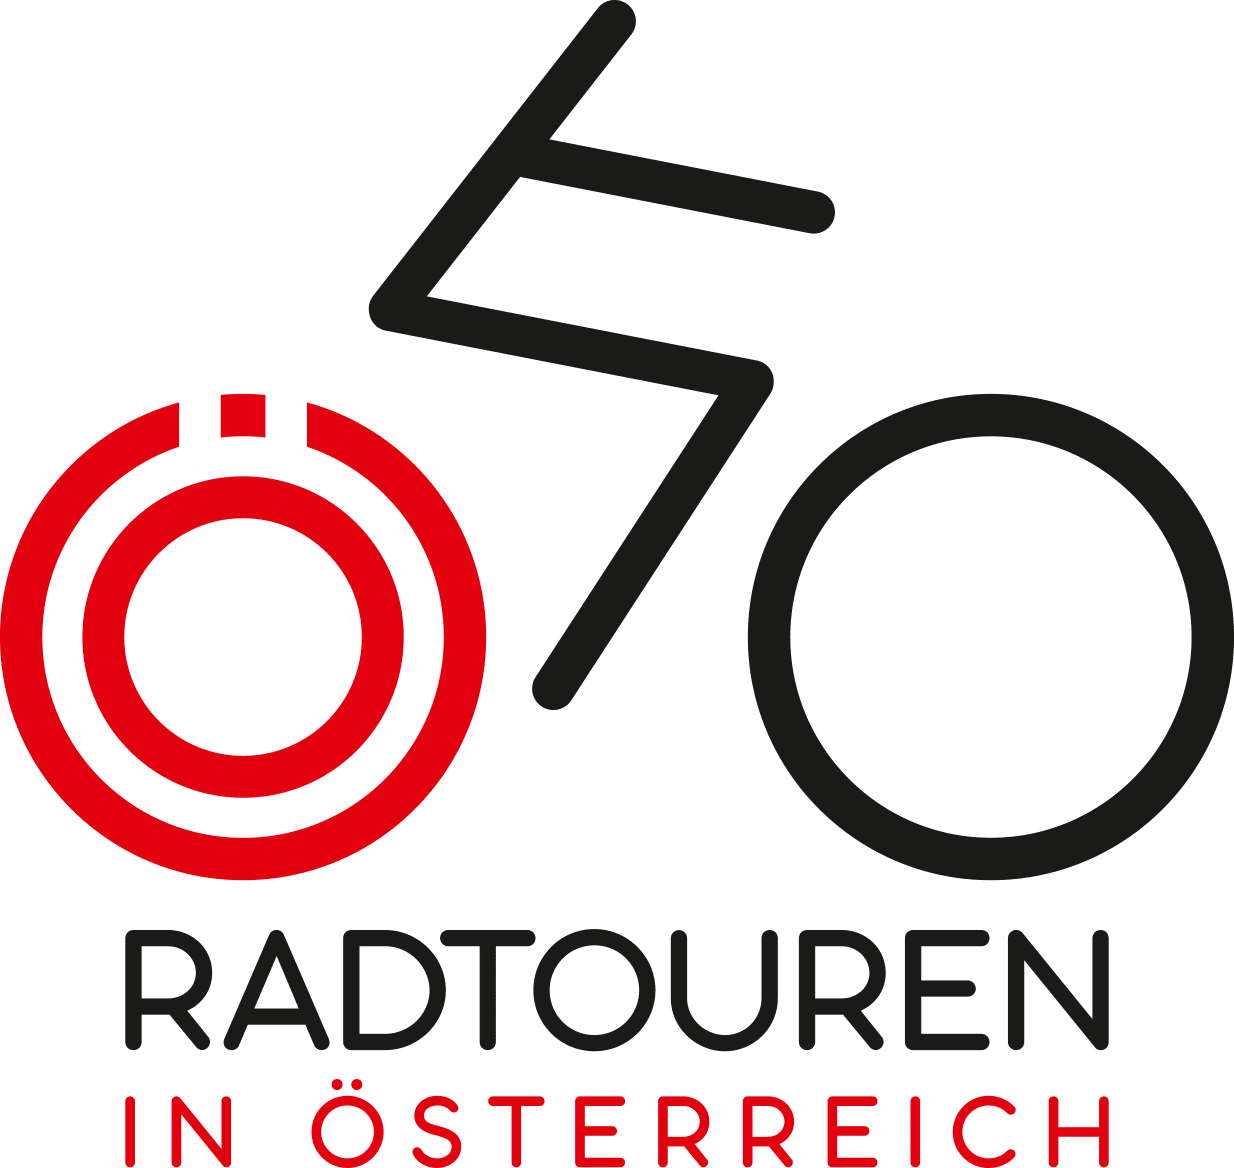 Radfahren (c) www.erlebnis-leoben.at